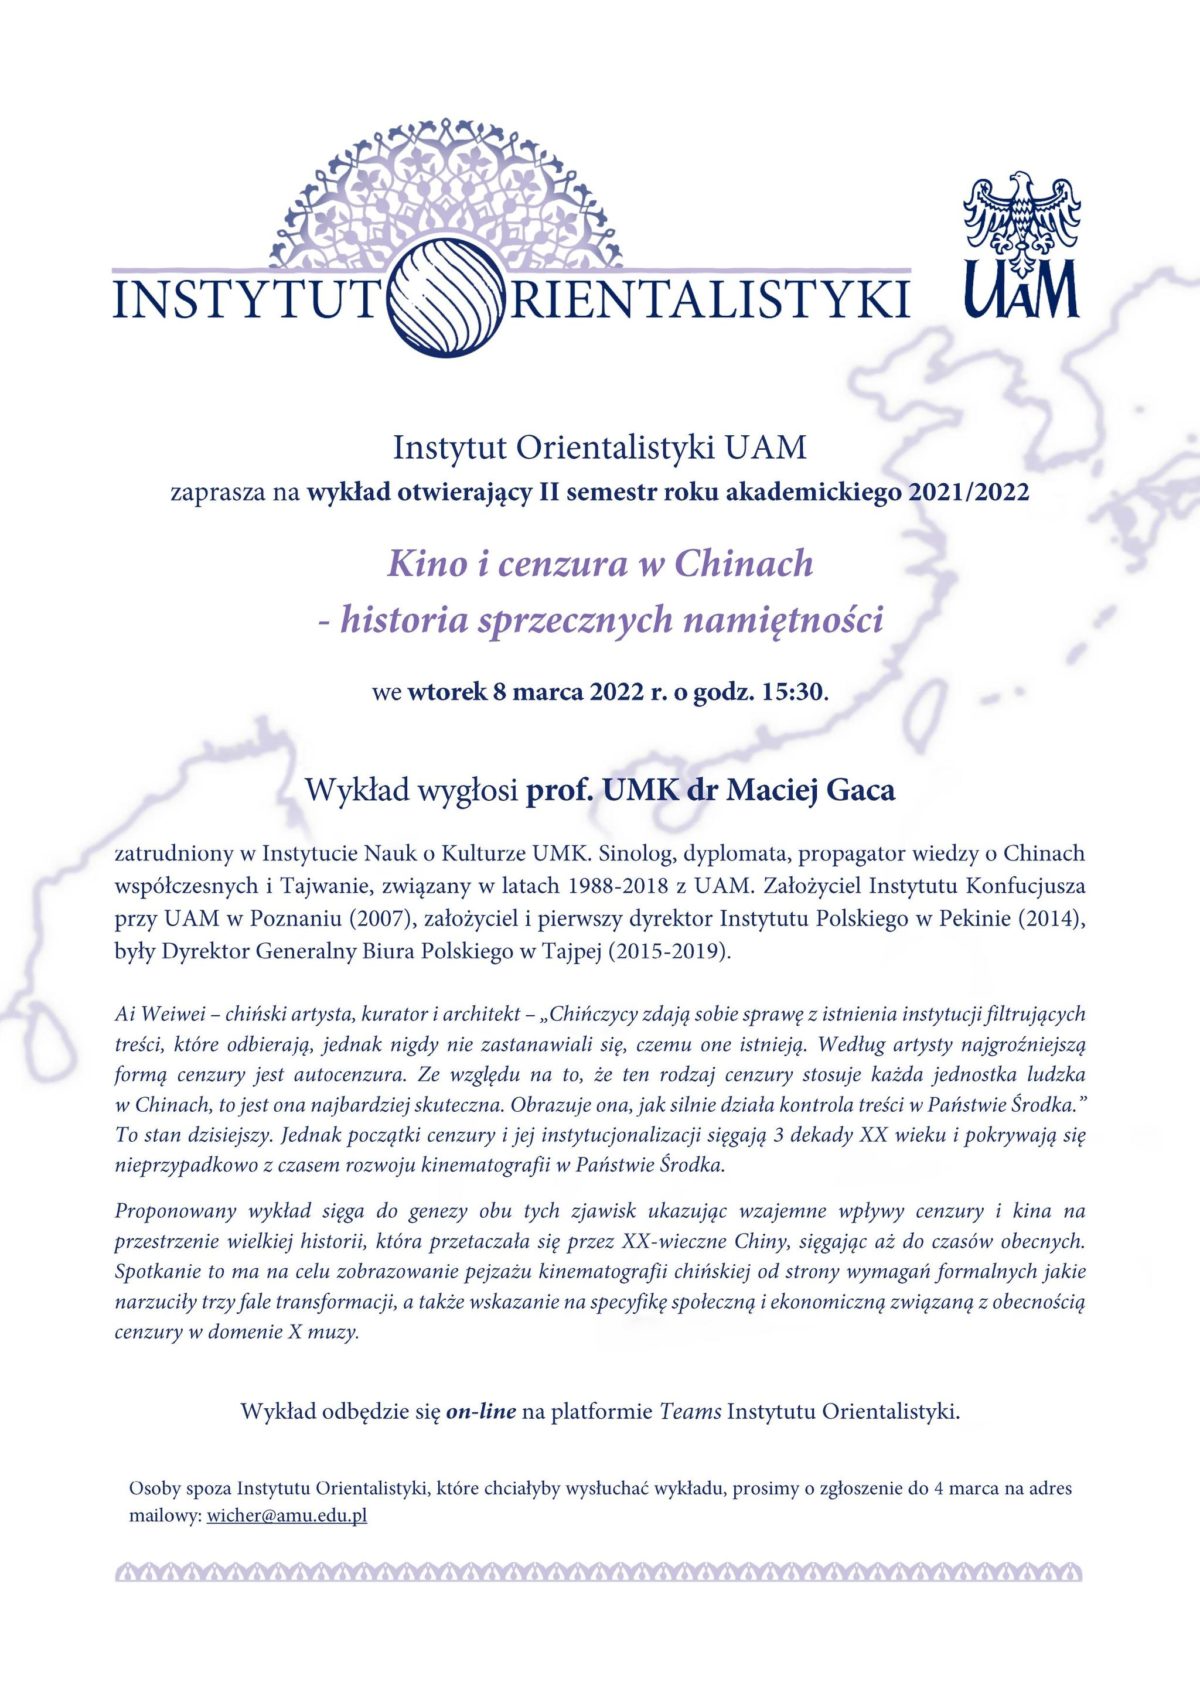 Zapraszamy na wykład otwierający II semestr roku akademickiego 2021/2022 w Instytucie Orientalistyki UAM